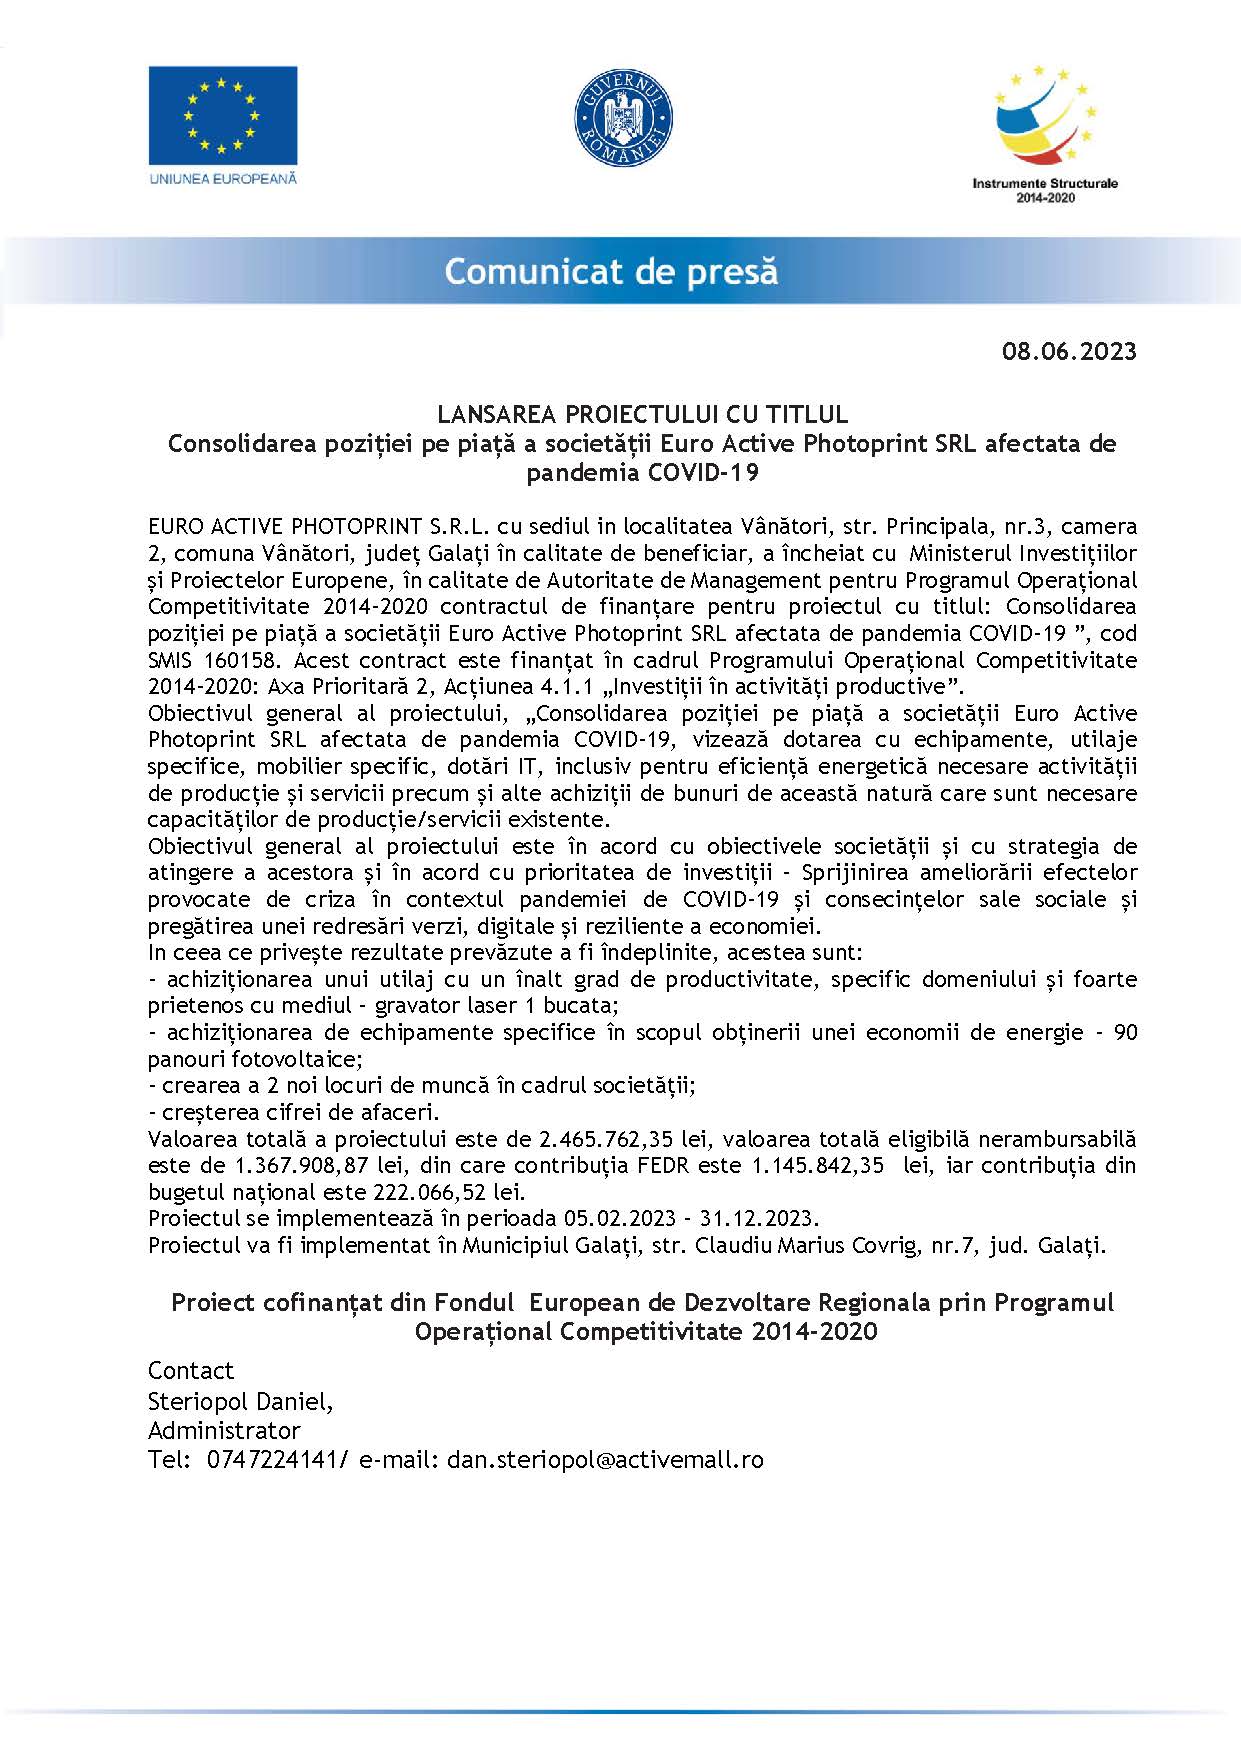 LANSAREA PROIECTULUI CU TITLUL Consolidarea poziției pe piață a societății Euro Active Photoprint SRL afectata de pandemia COVID-19 08.06.2023